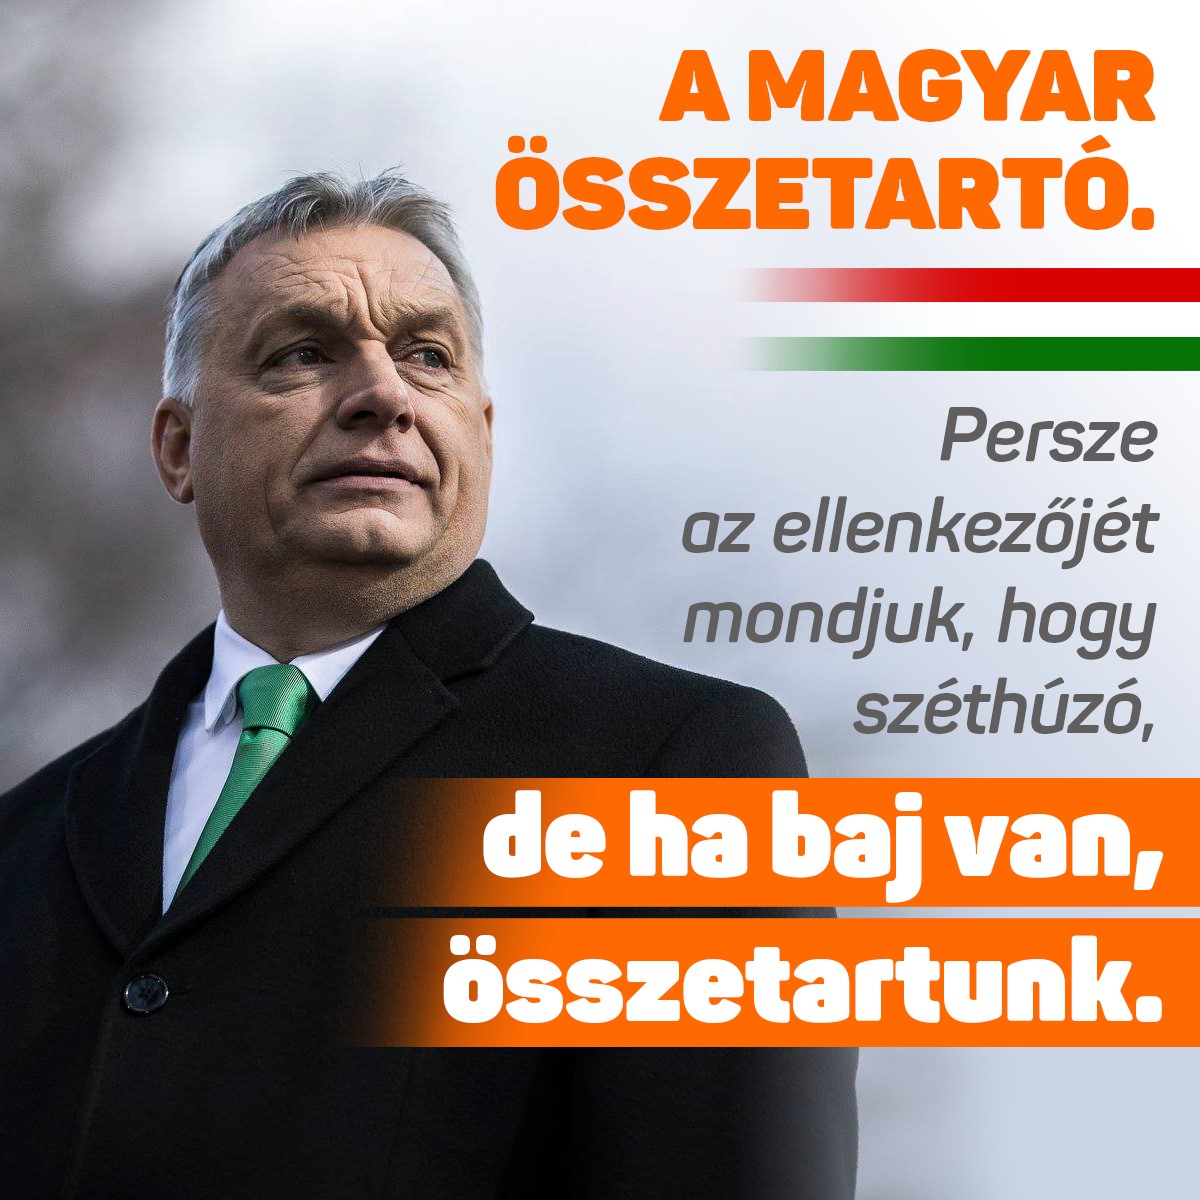 Orbán Viktor – A magyar összetartó. Persze az ellenkezőjét mondjuk, hogy széthúzó, de ha baj van, összetartunk.